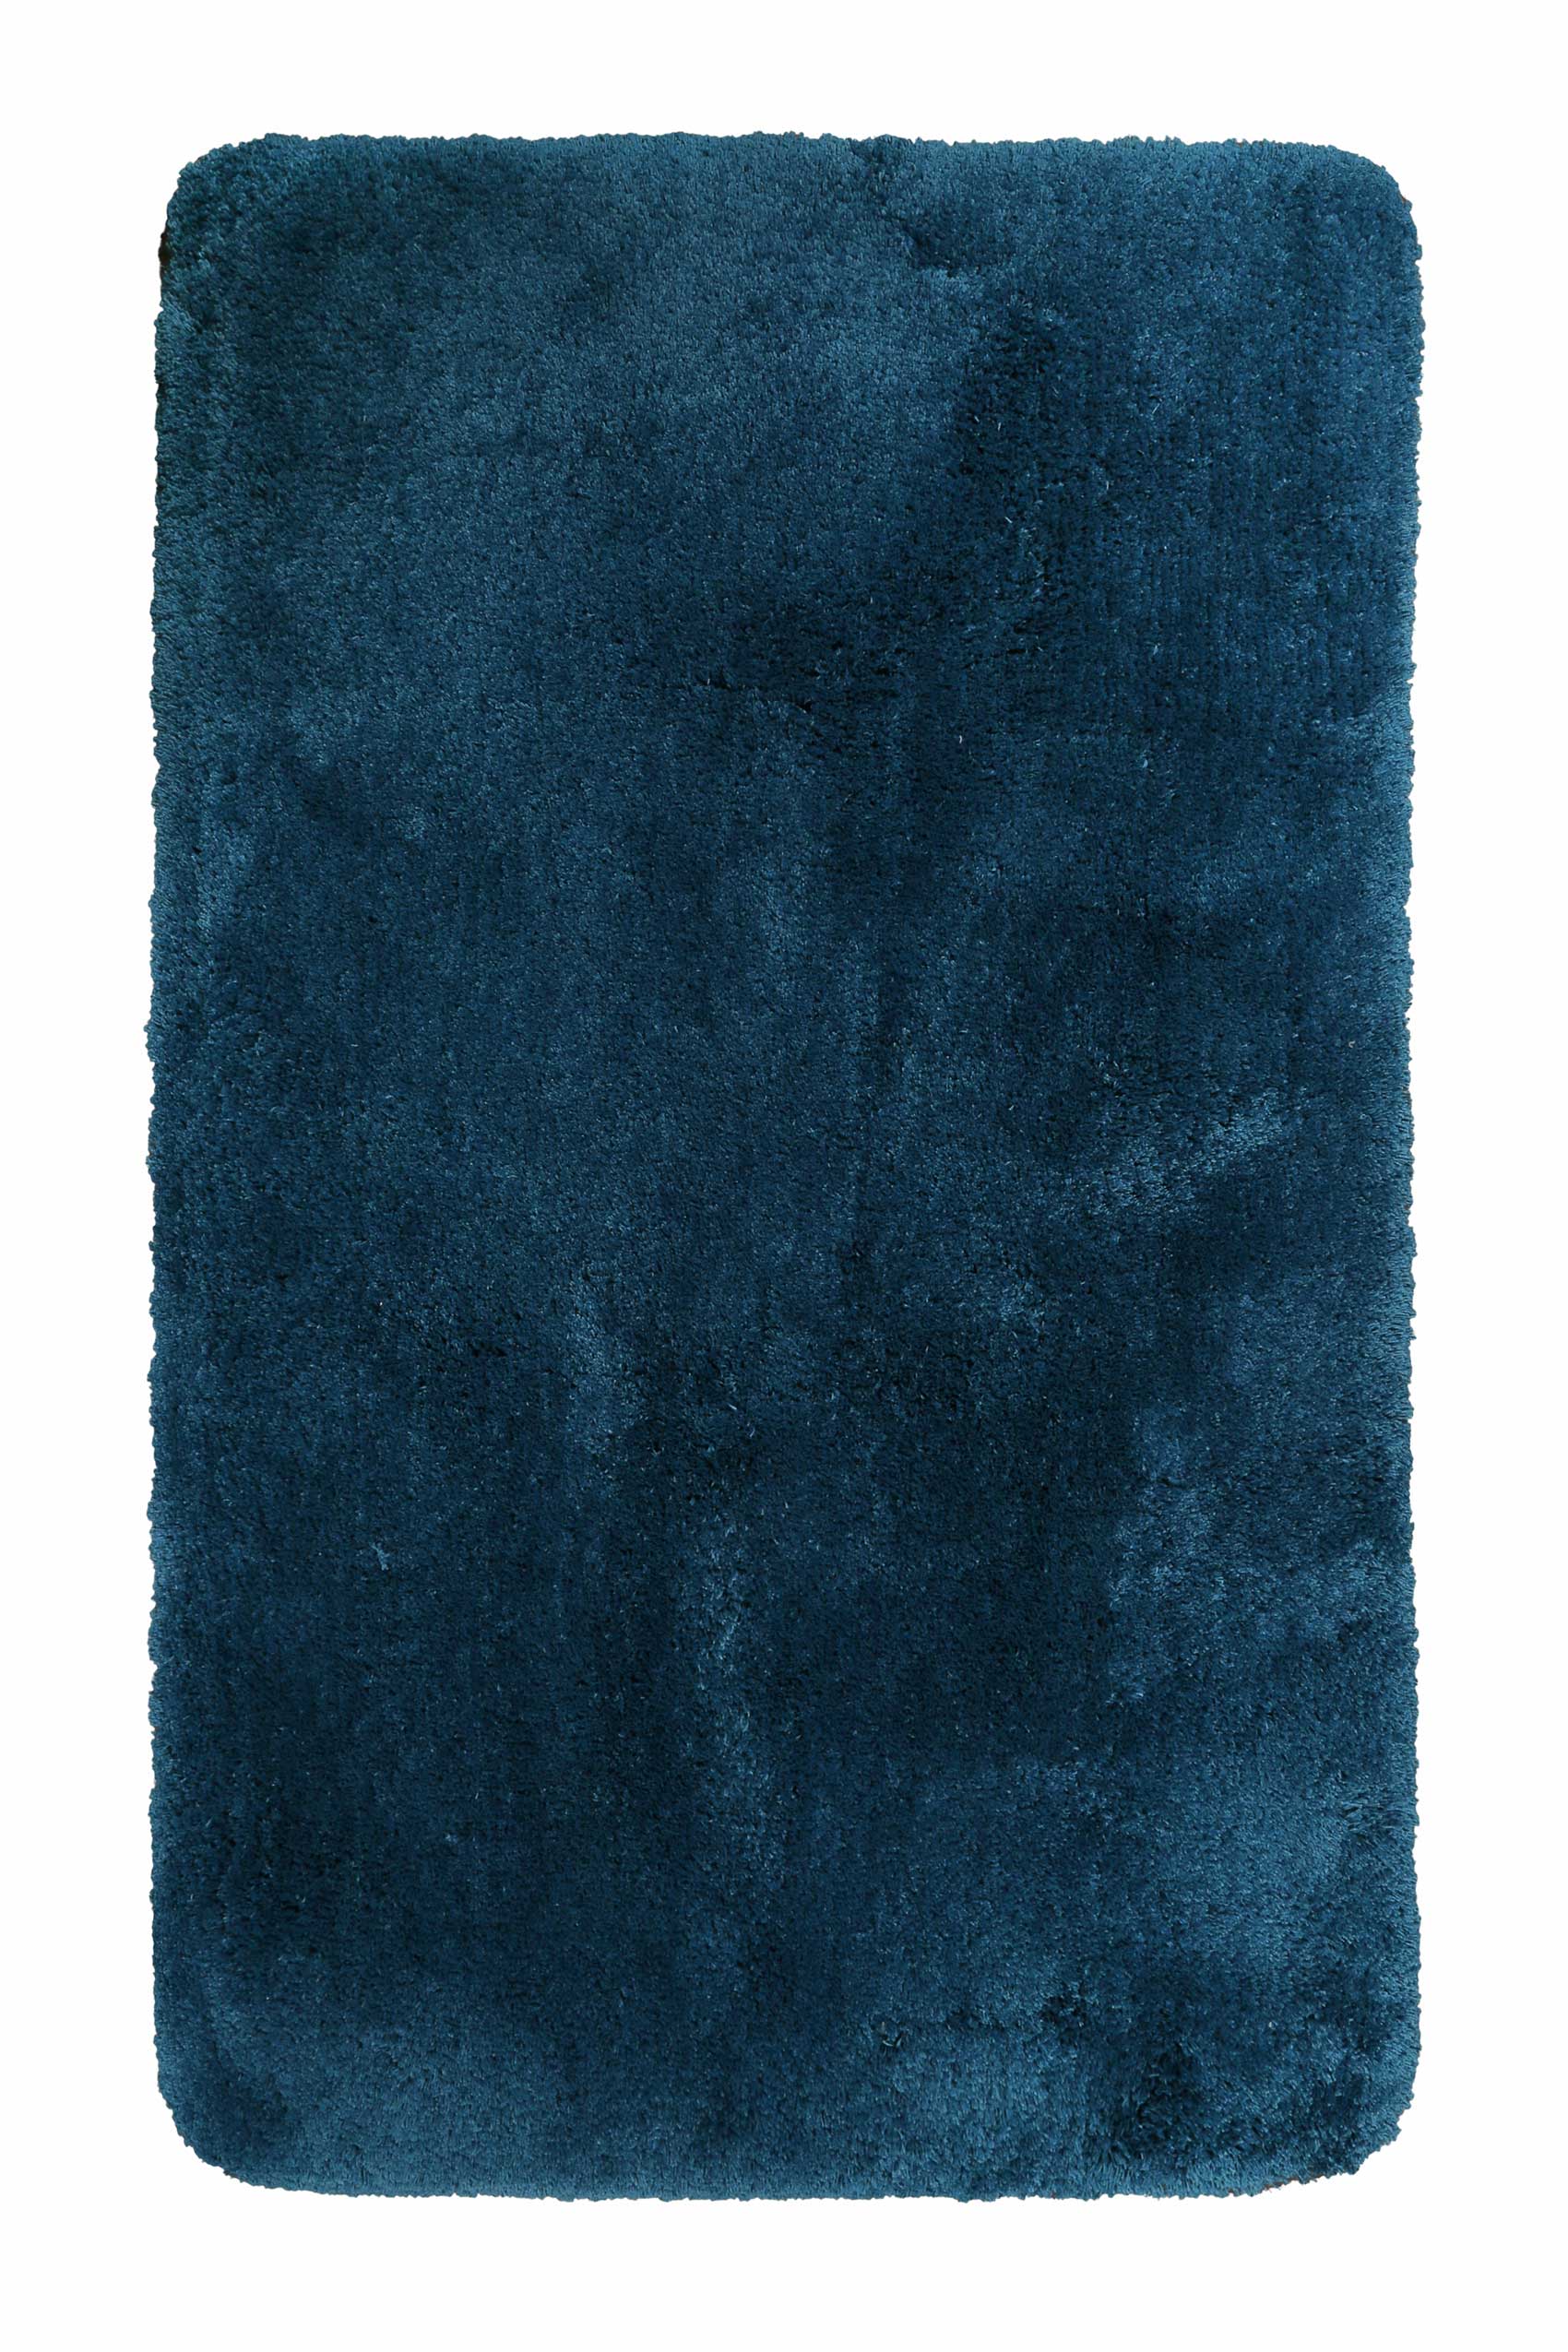 tapis de bain microfibre très doux uni bleu vert pétrole 60x100